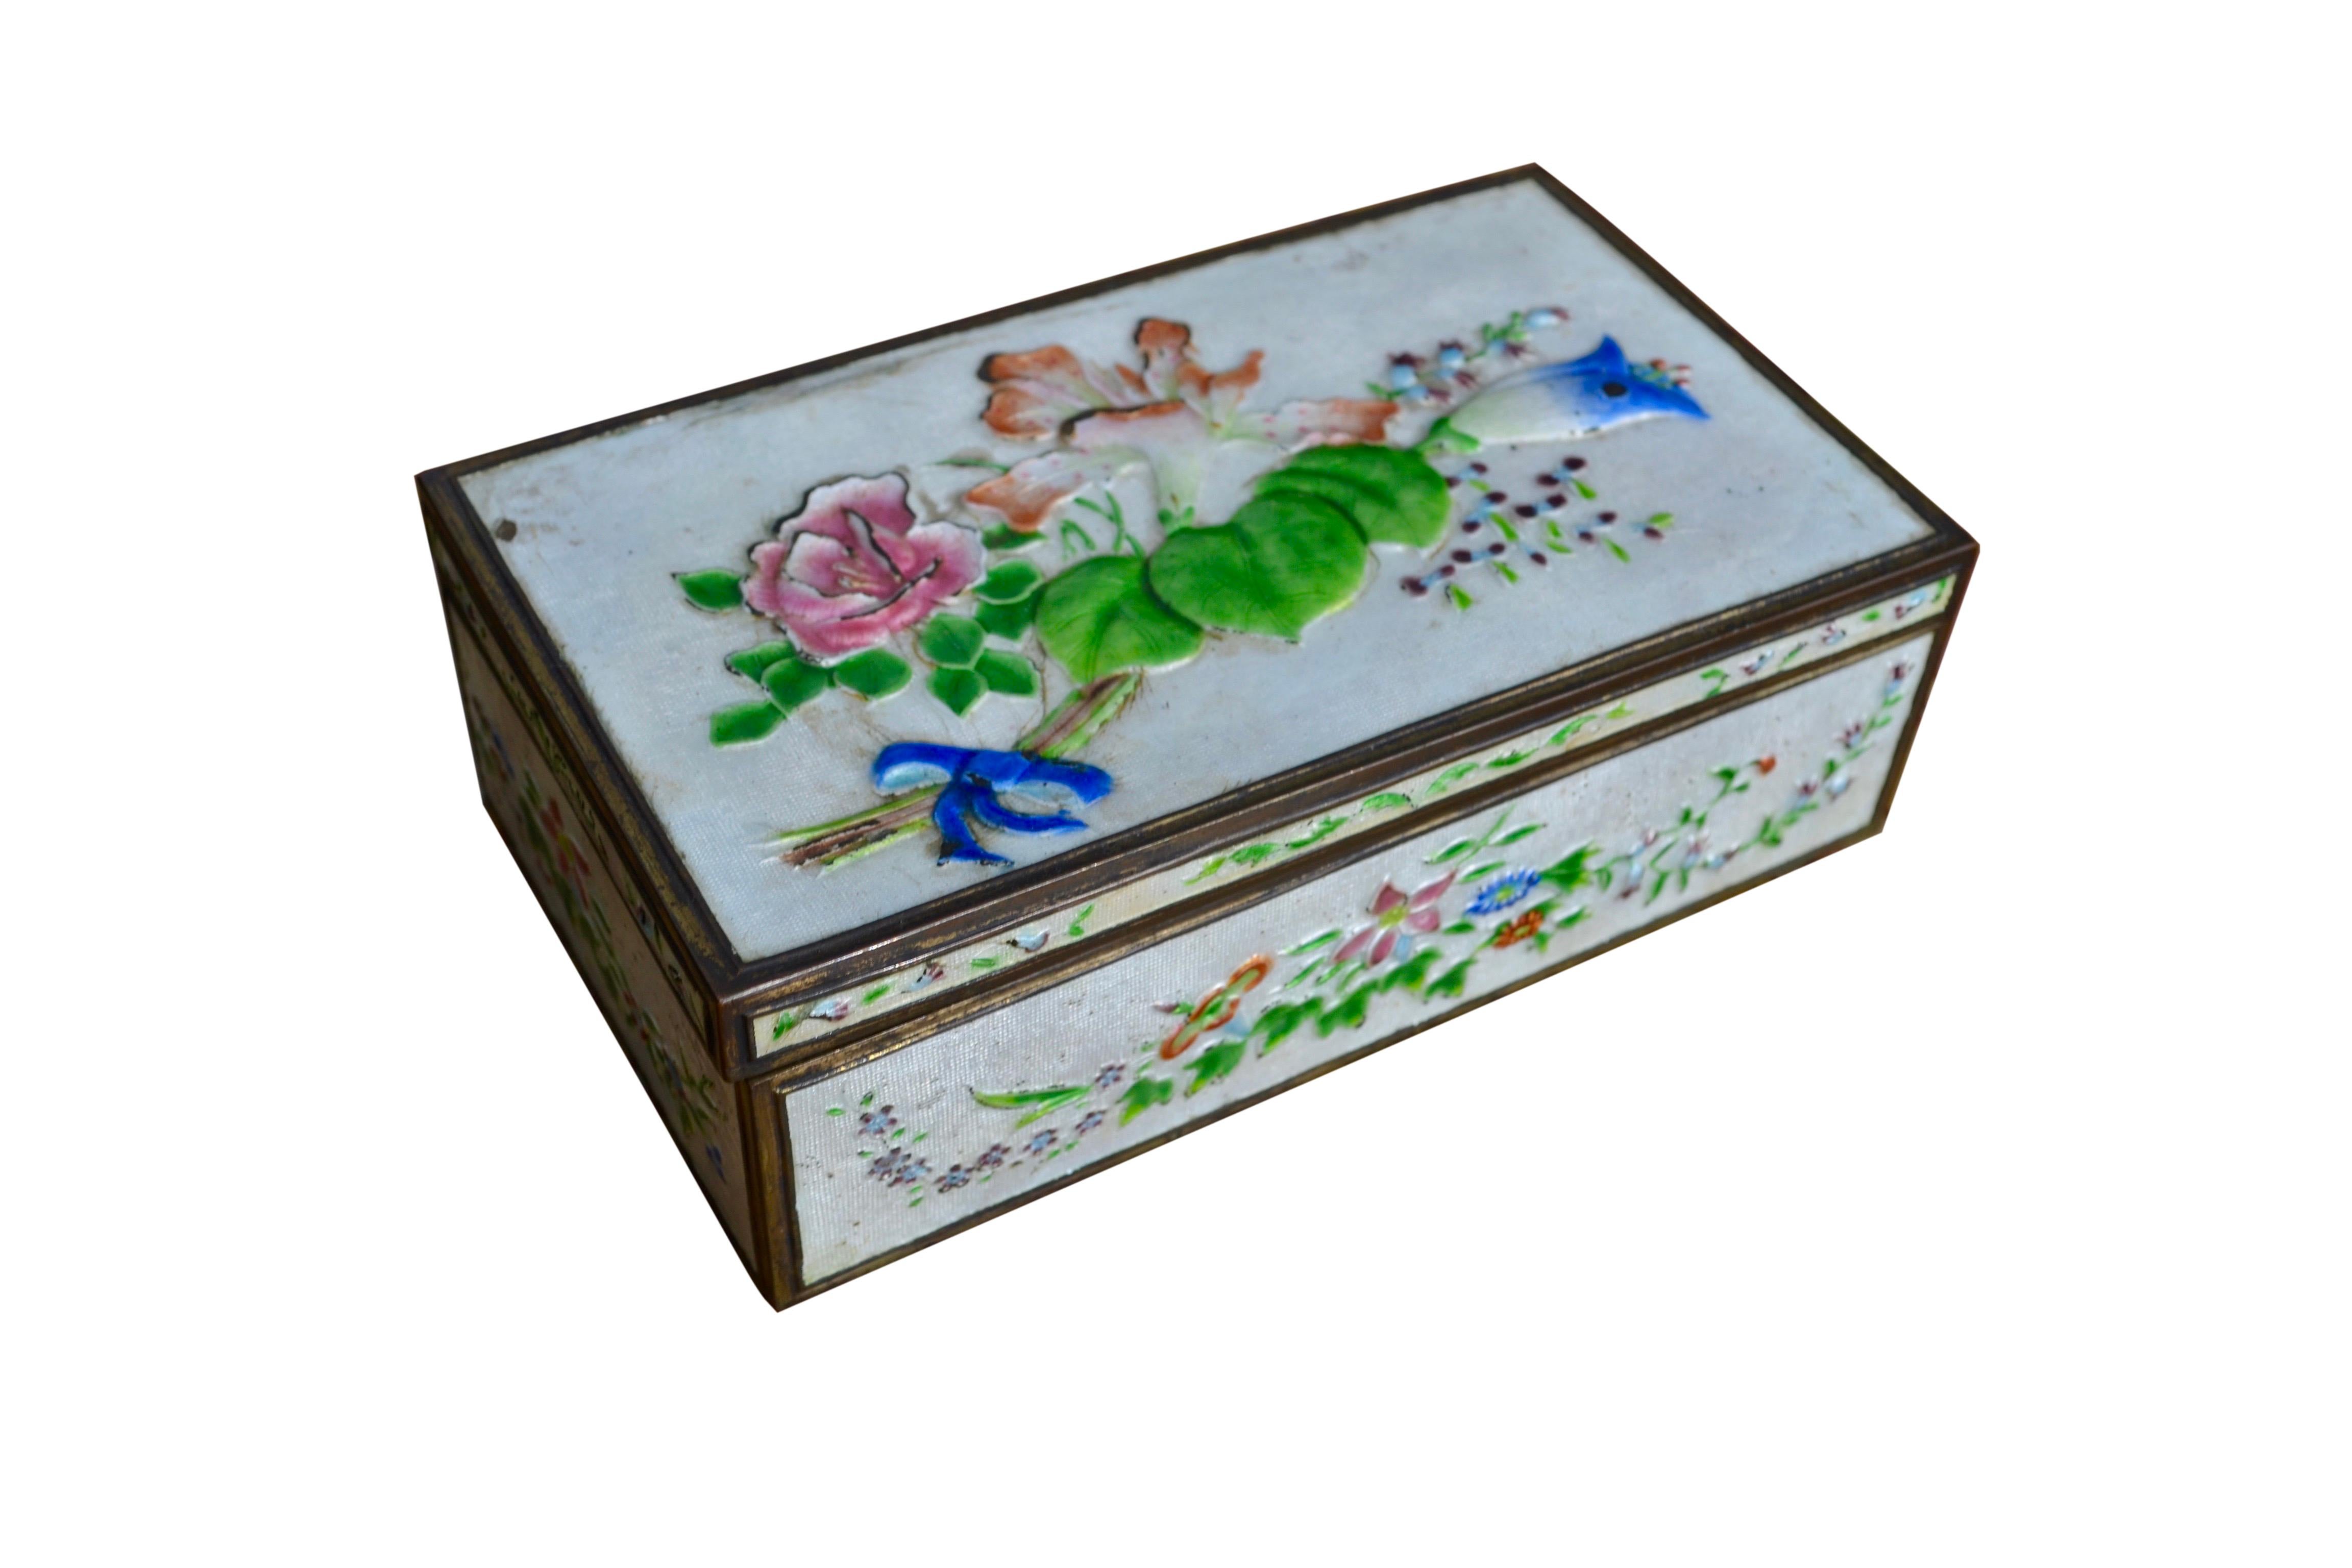 Une boîte à cadre métallique avec une décoration en laque sur toute sa surface, avec des fleurs, des feuilles et des rubans multicolores. L'intérieur de la boîte est plaqué d'un bois clair. Il est estampillé China sur le dessous et possède une